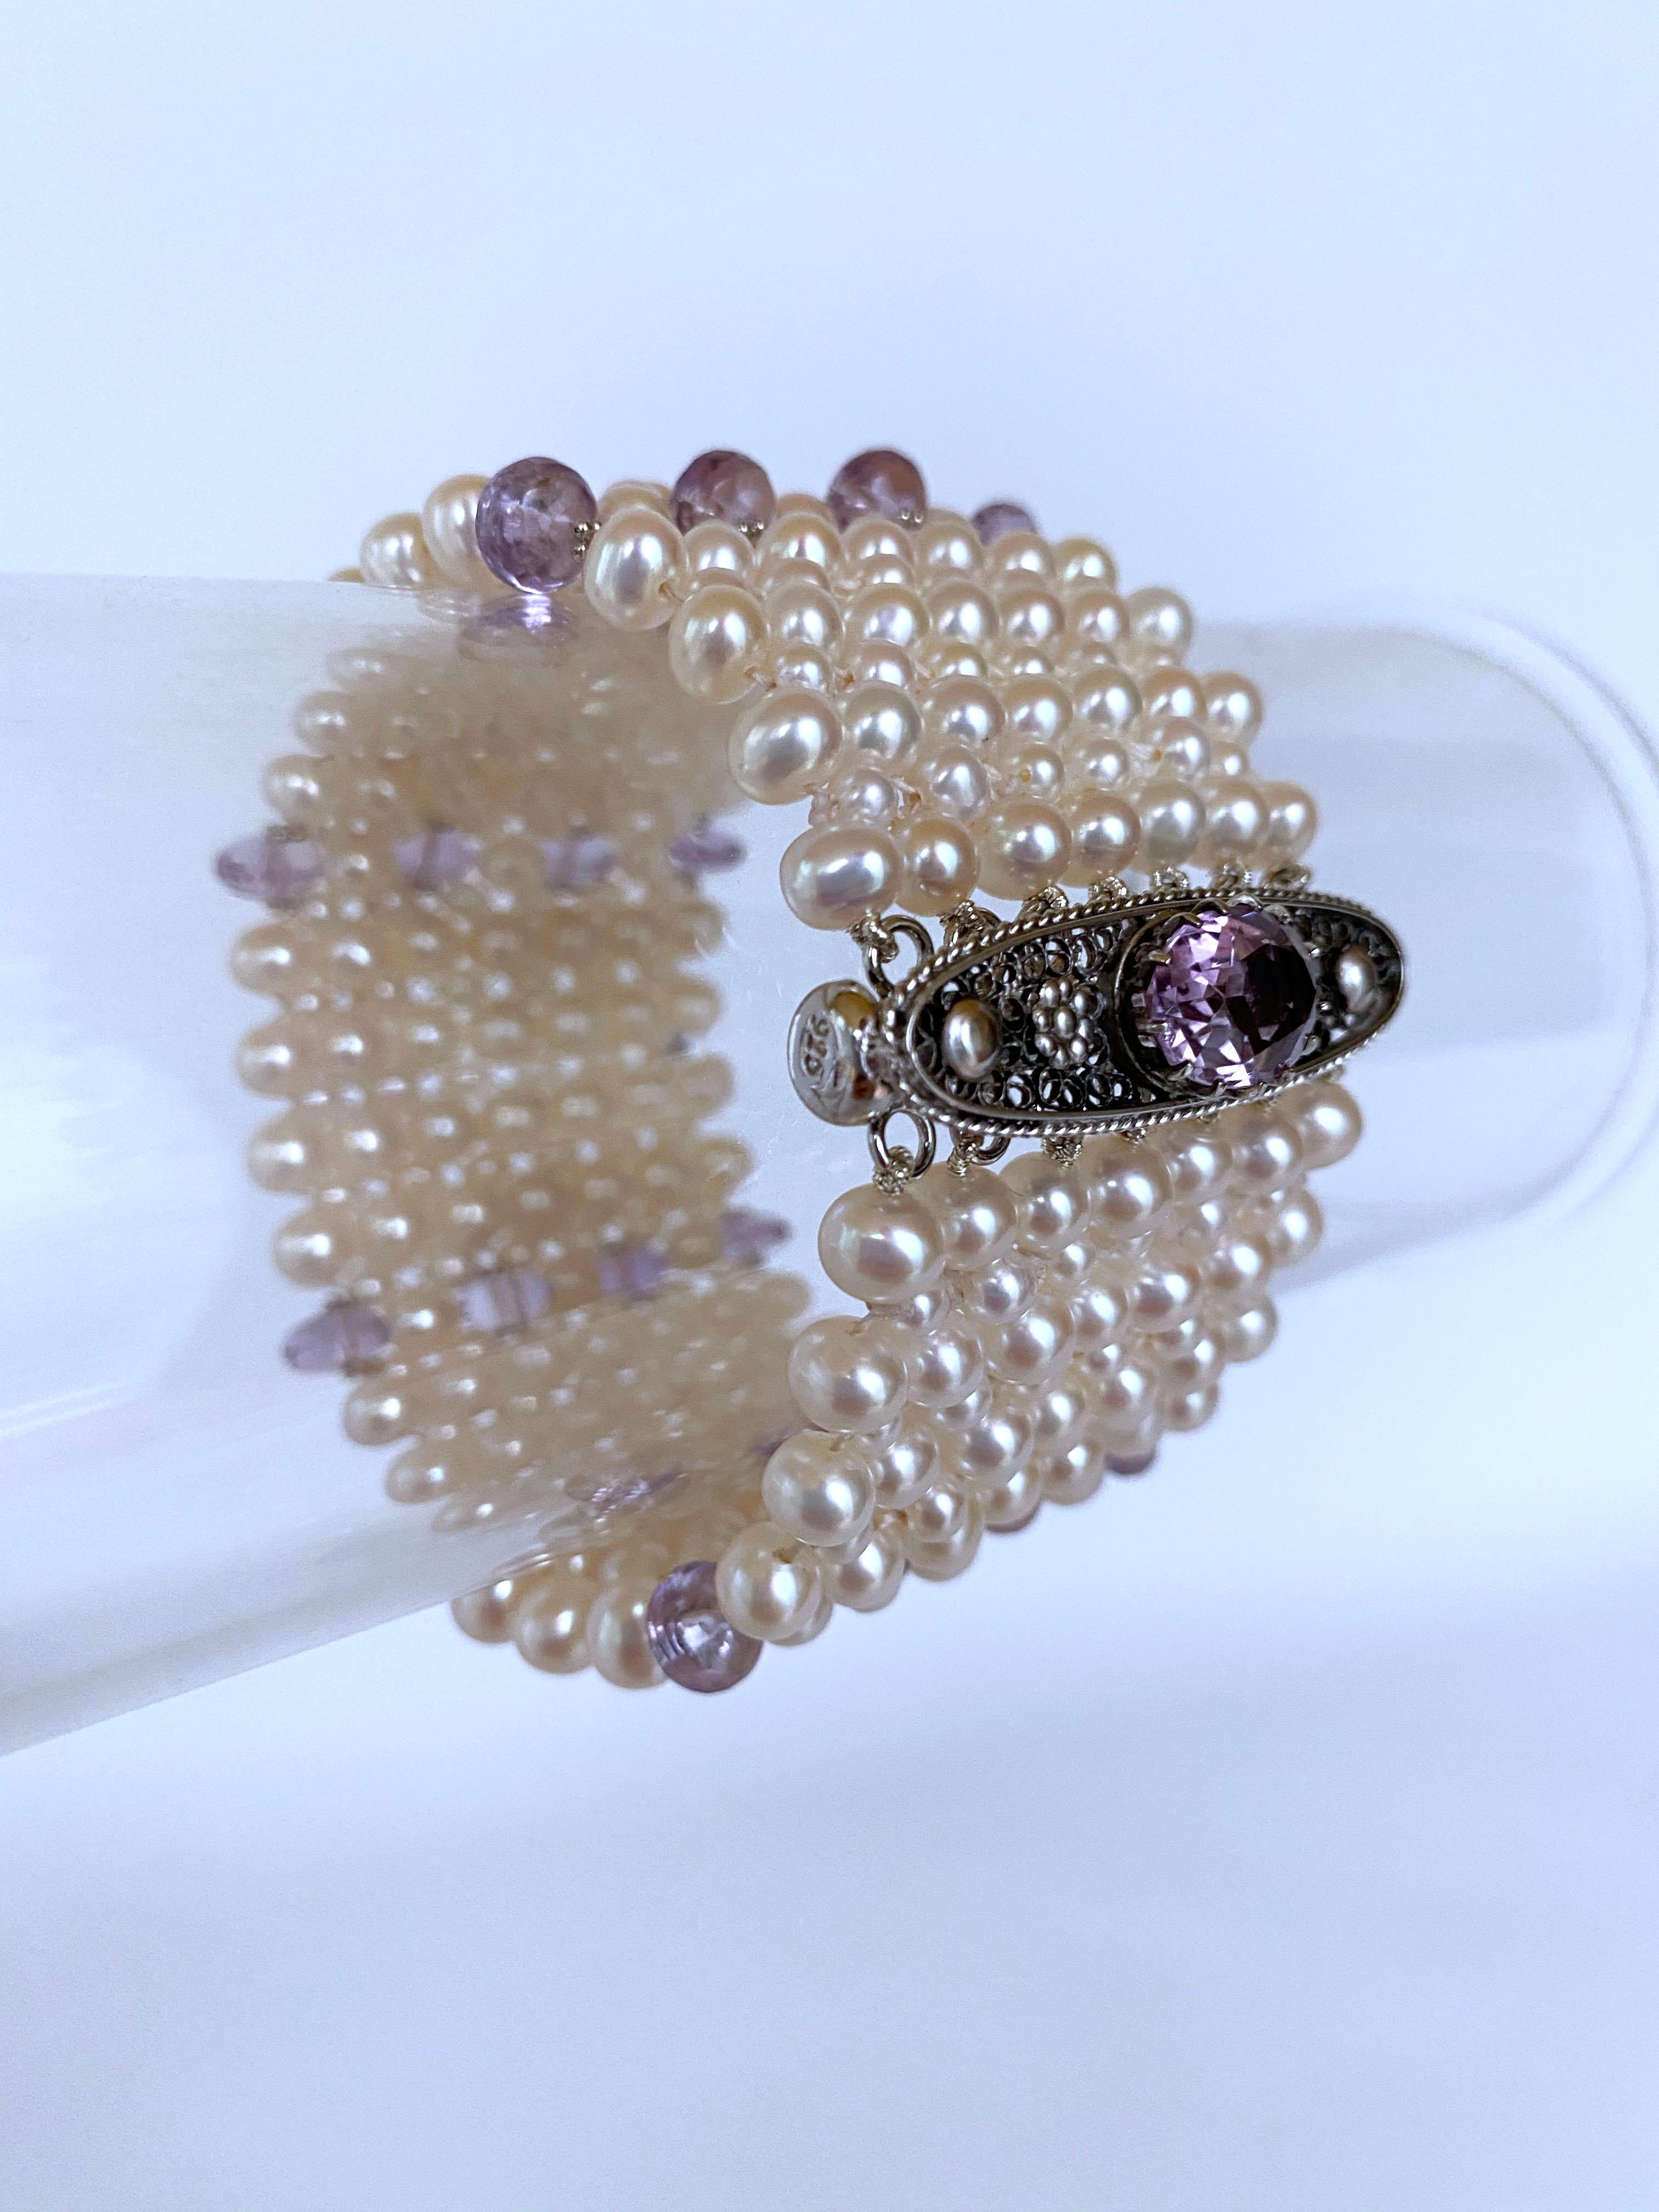 Ein wunderschönes Stück von Marina J. Dieses kunstvoll von Hand geflochtene Armband besteht aus hochglänzenden cremefarbenen Perlen, die ein wildes Schillern in sanften Farben zeigen. Die Perlen in verschiedenen Größen (2,5 mm und 4 mm)  sind zu